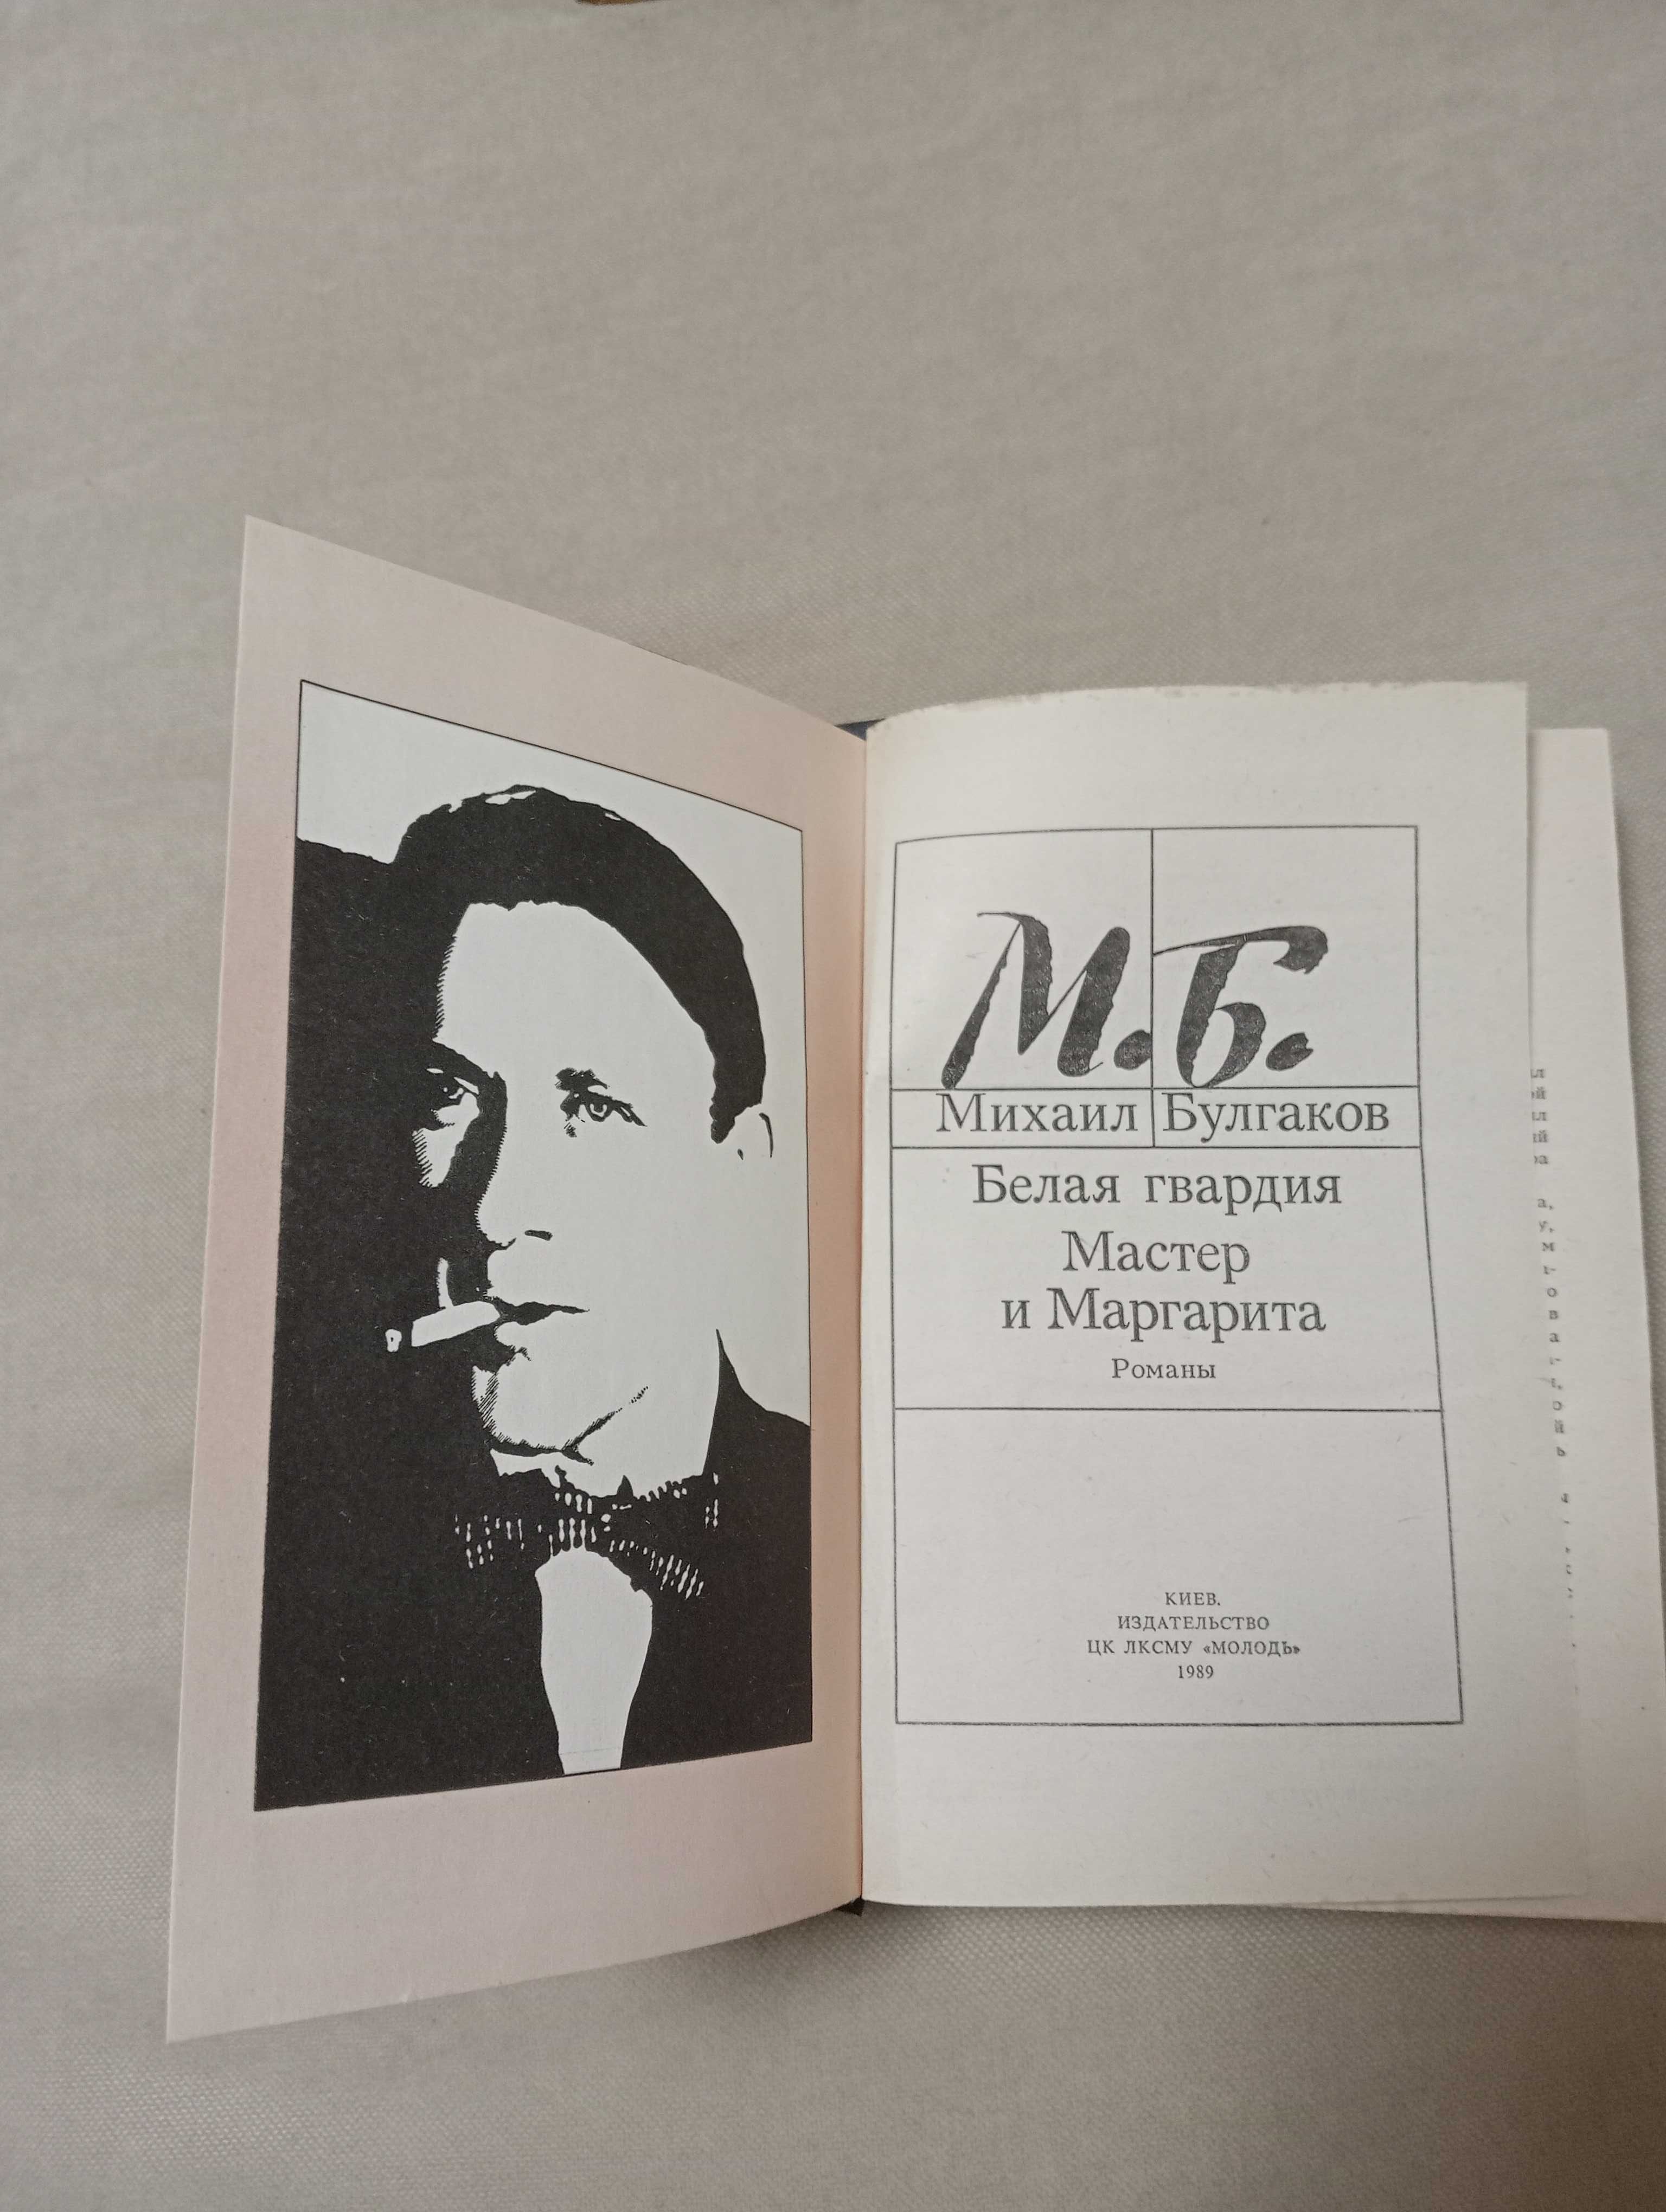 Книга М .Булгаков  "Мастер и Маргарита" , "Белая гвардия"